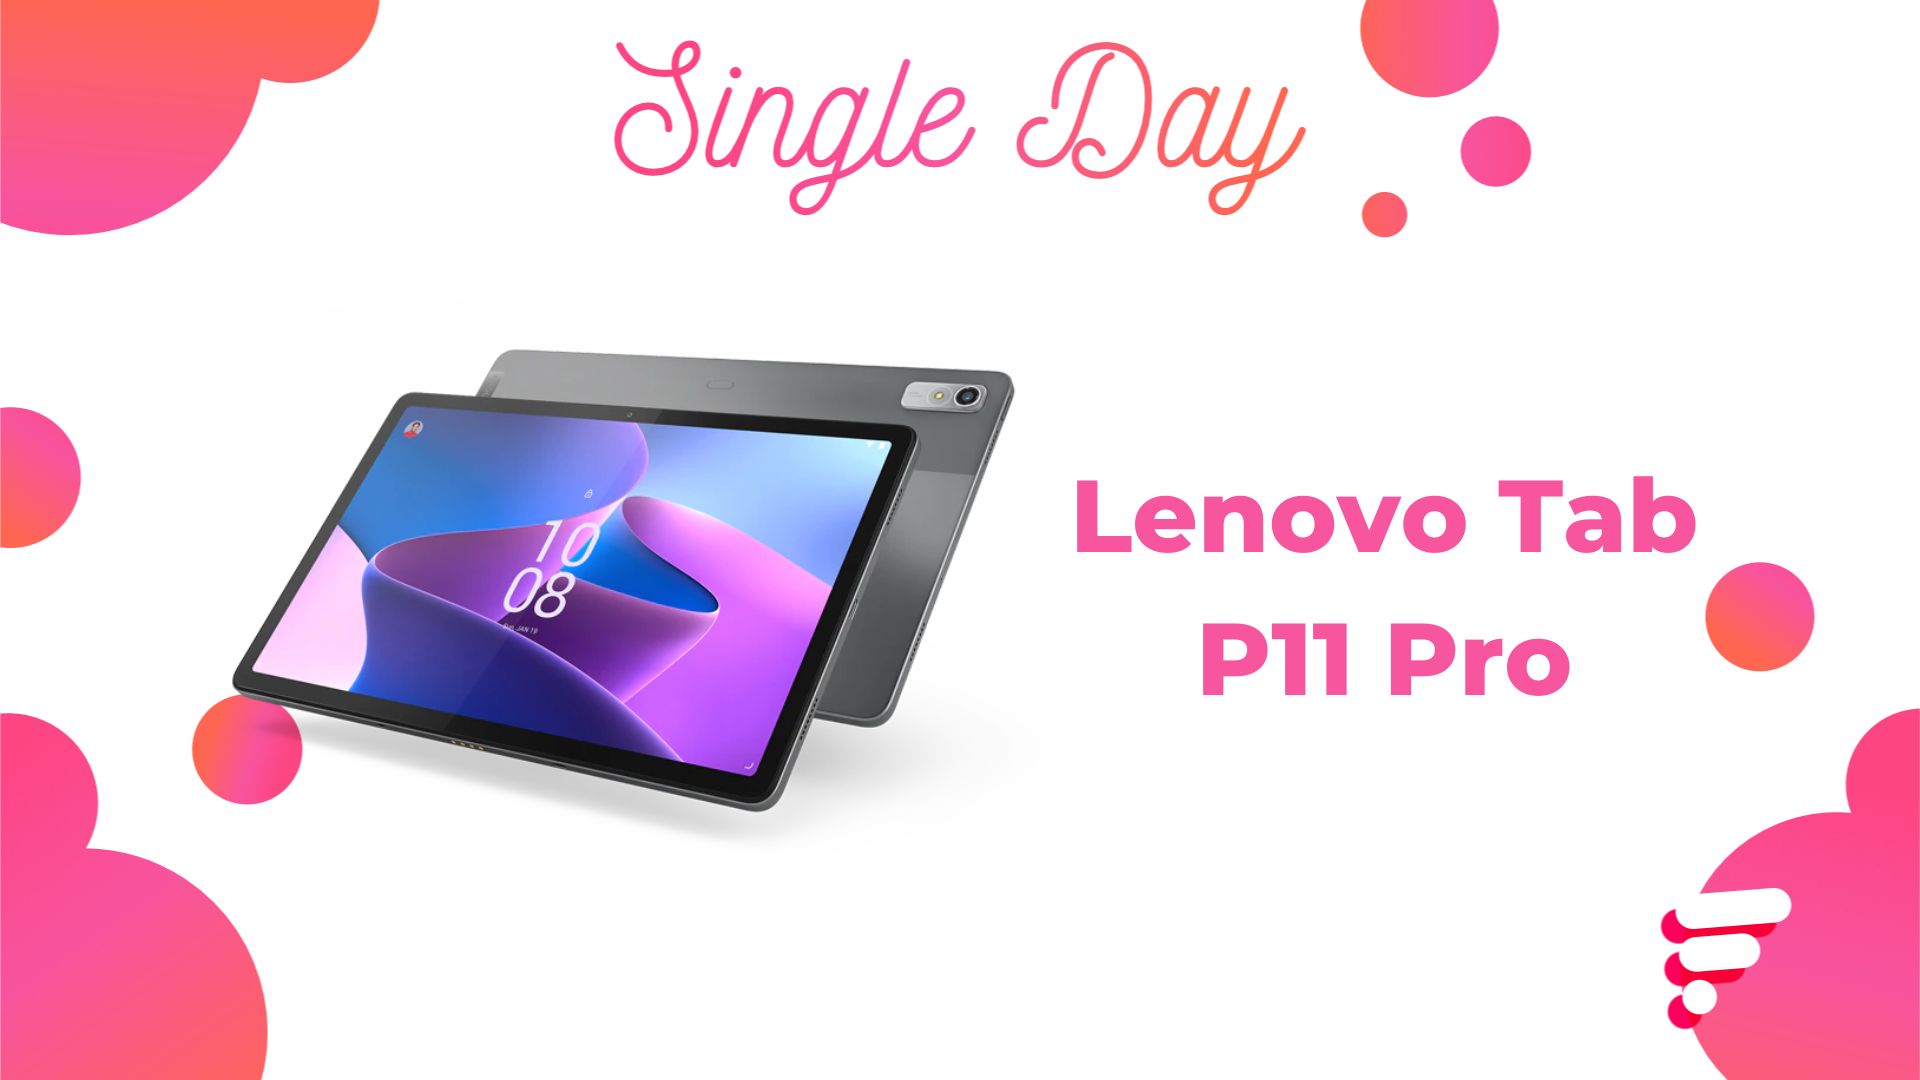 La tablette premium de Lenovo avec écran OLED perd 40 % de son prix durant  le Single Day